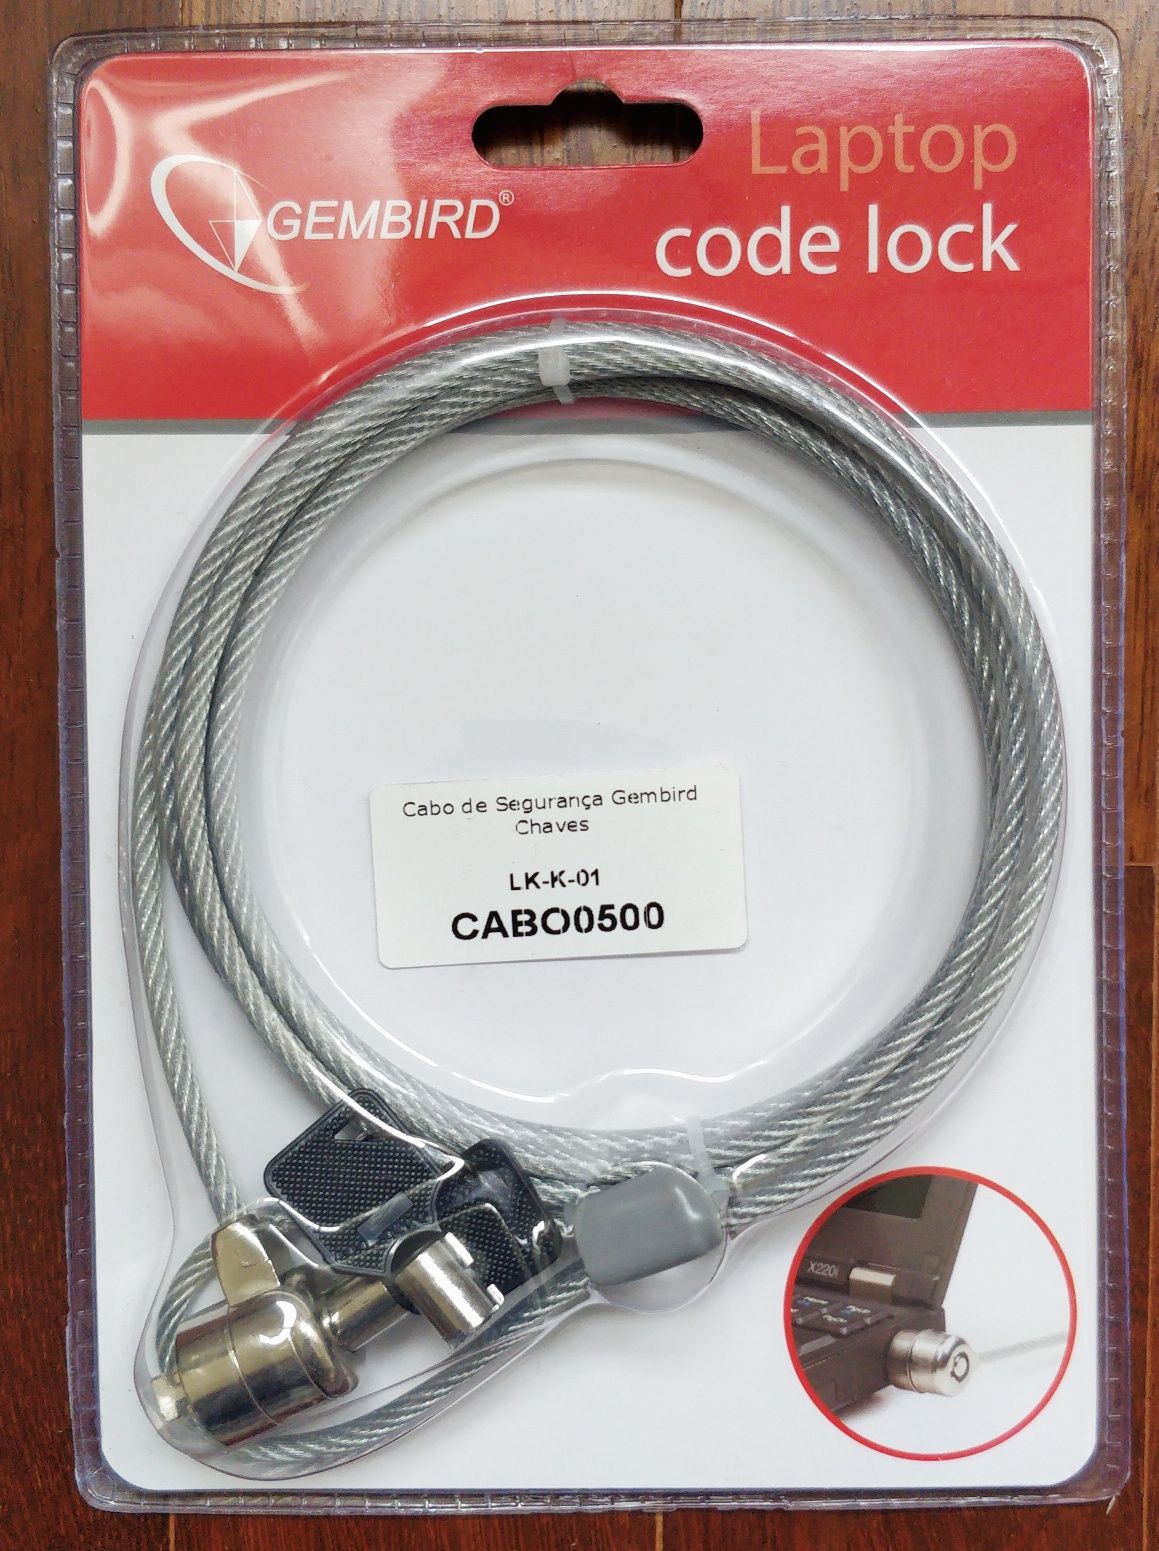 (NOVO) Gembird Laptop Code Lock cadeado segurança para portátil